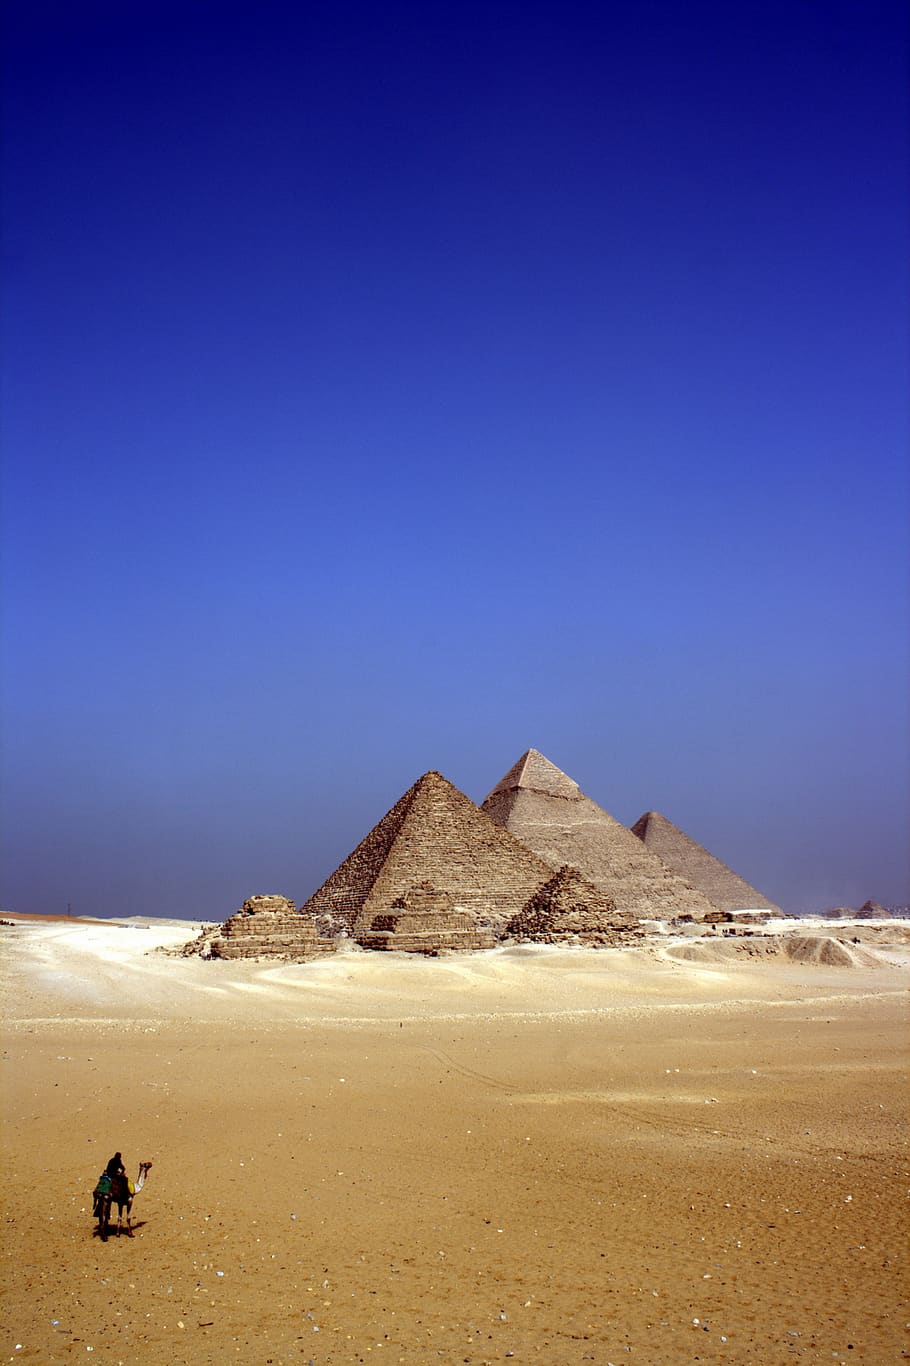 egito, deserto, animais, camelos, areia, estruturas, arquitetura, pirâmide, céu, azul